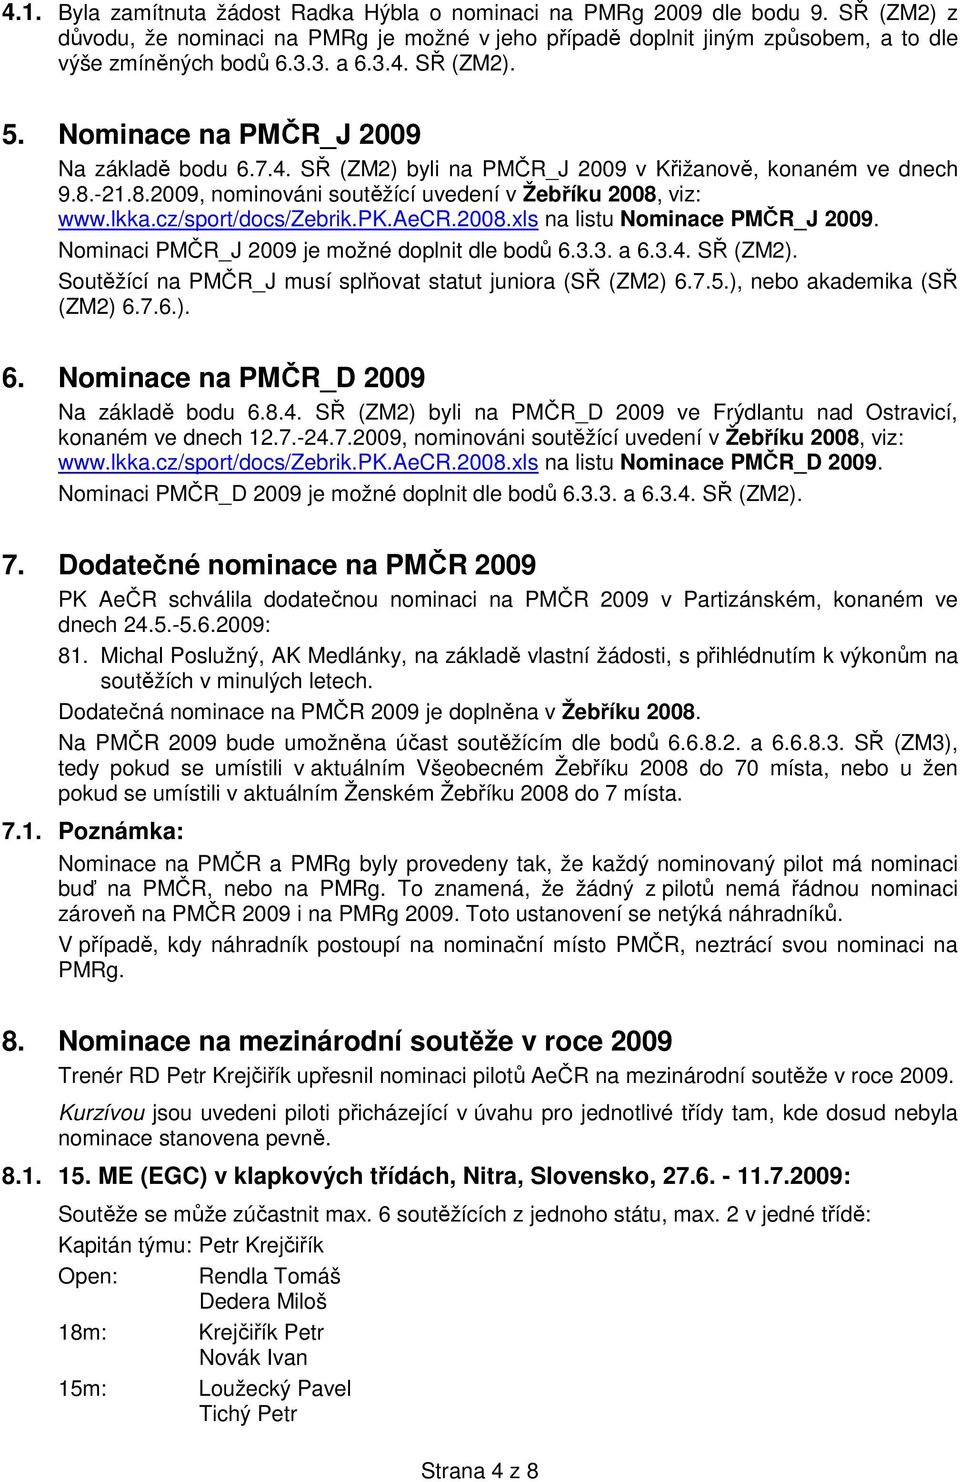 cz/sport/docs/zebrik.pk.aecr.2008.xls na listu Nominace PMČR_J 2009. Nominaci PMČR_J 2009 je možné doplnit dle bodů 6.3.3. a 6.3.4. SŘ (ZM2).